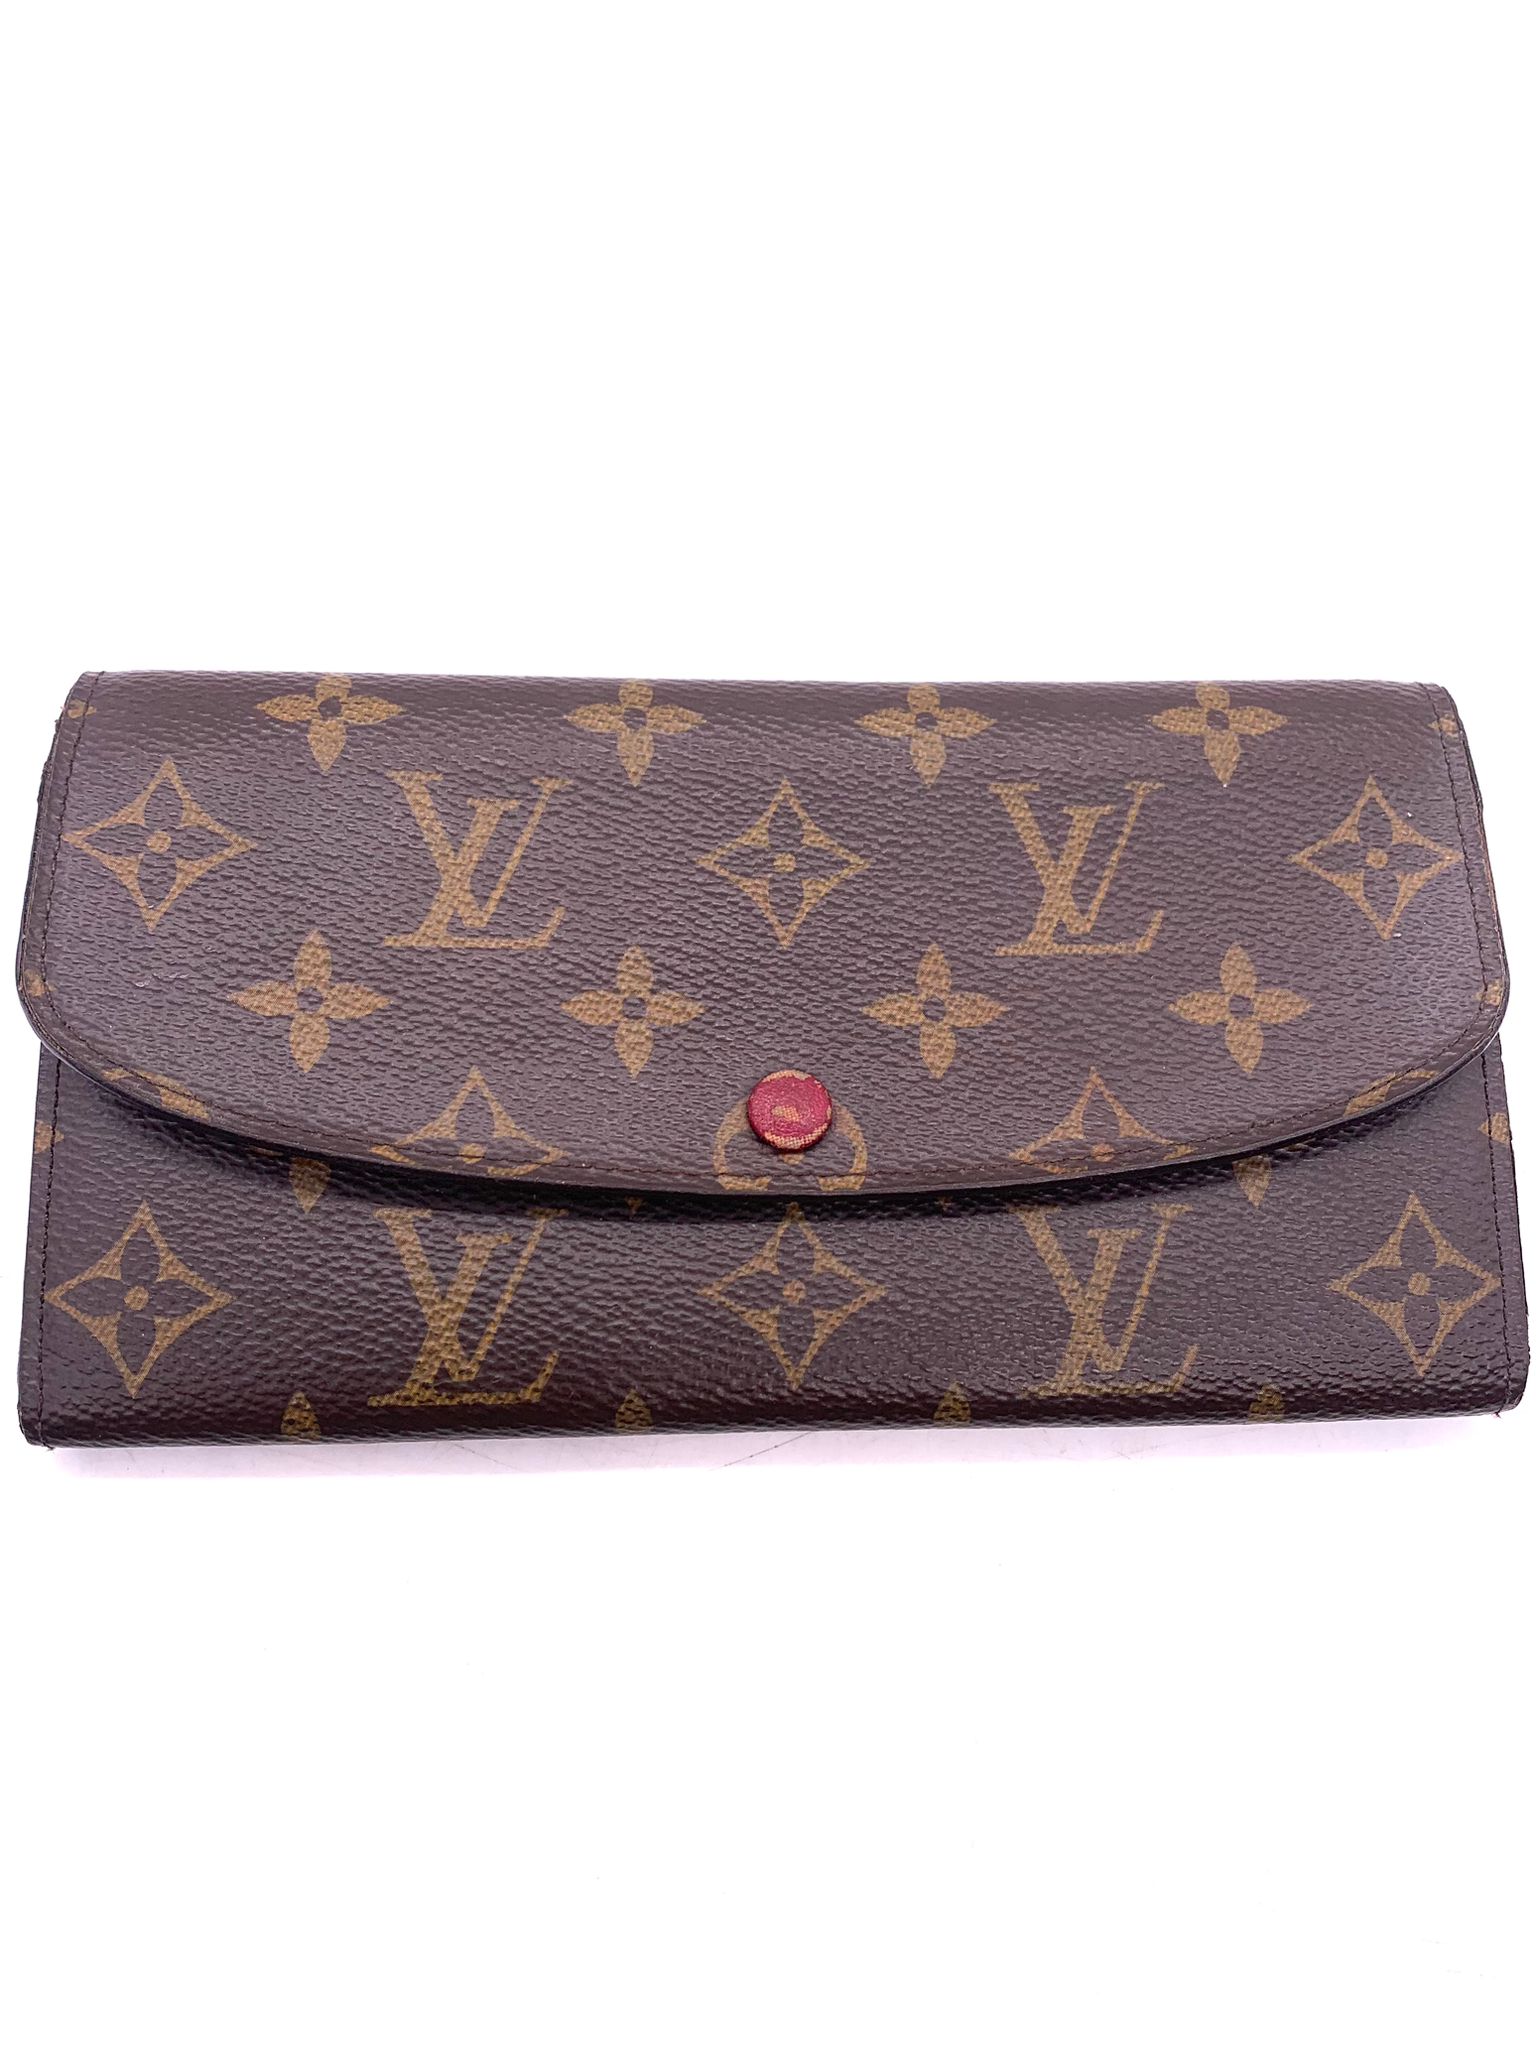 Cartera Louis Vuitton - Bolsos de lujo Keway Bags